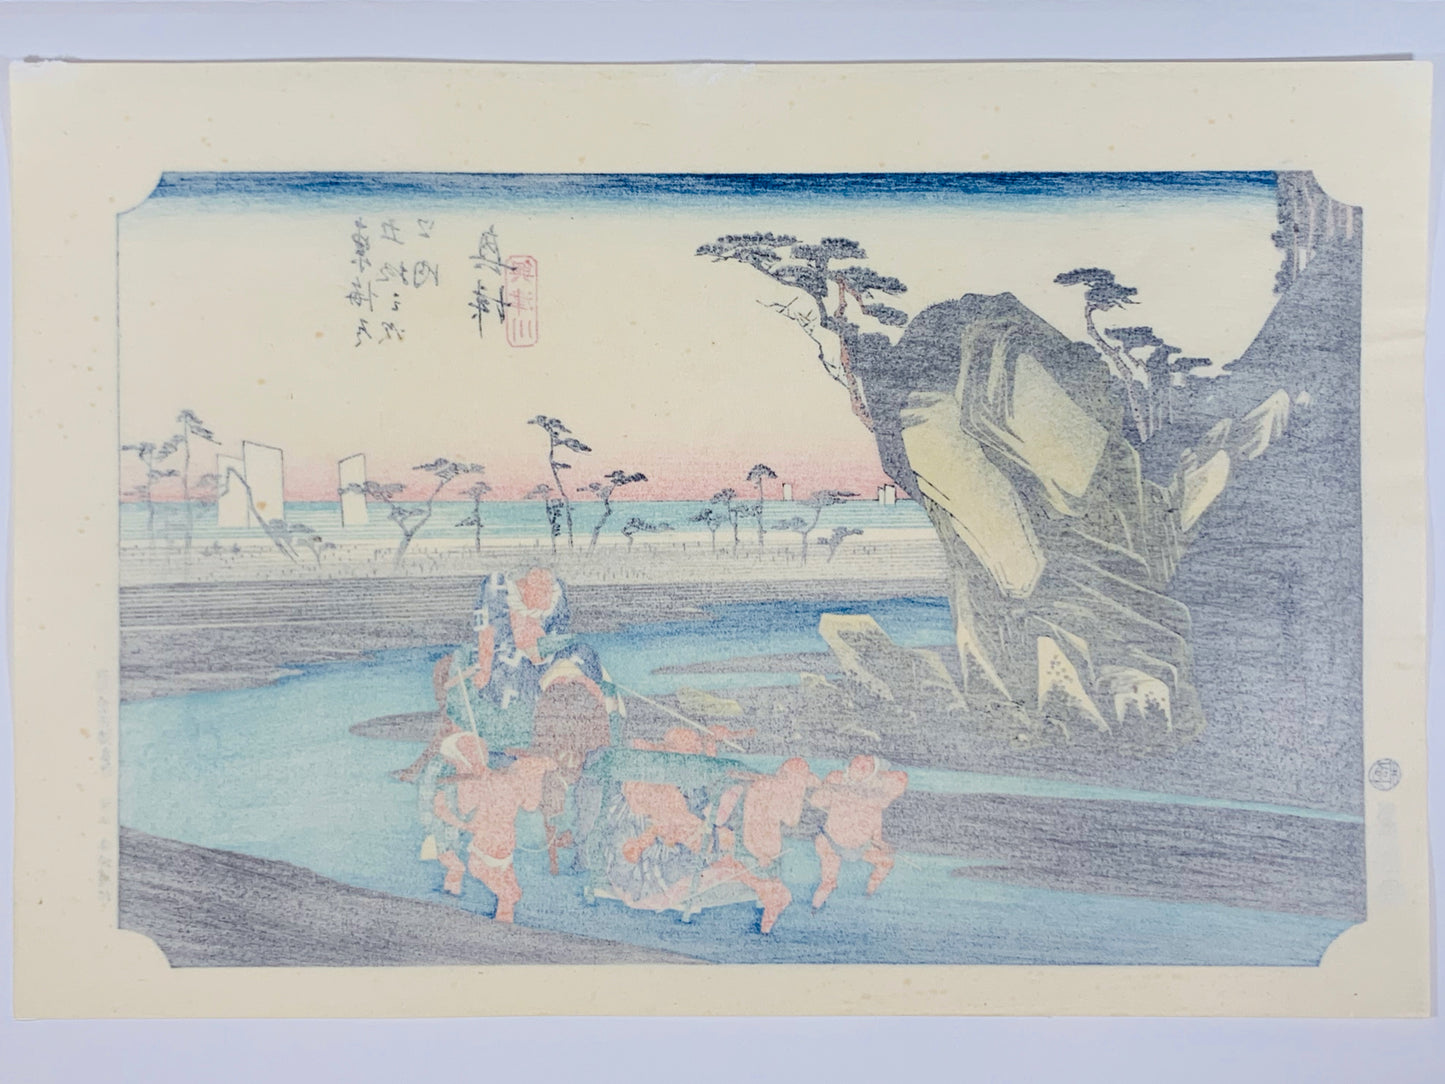 estampe japonaise de paysage de Hiroshige, deux sumos sont portés par quatres hommes sur le chemin inondé du Tokaido, dos de l'estampe